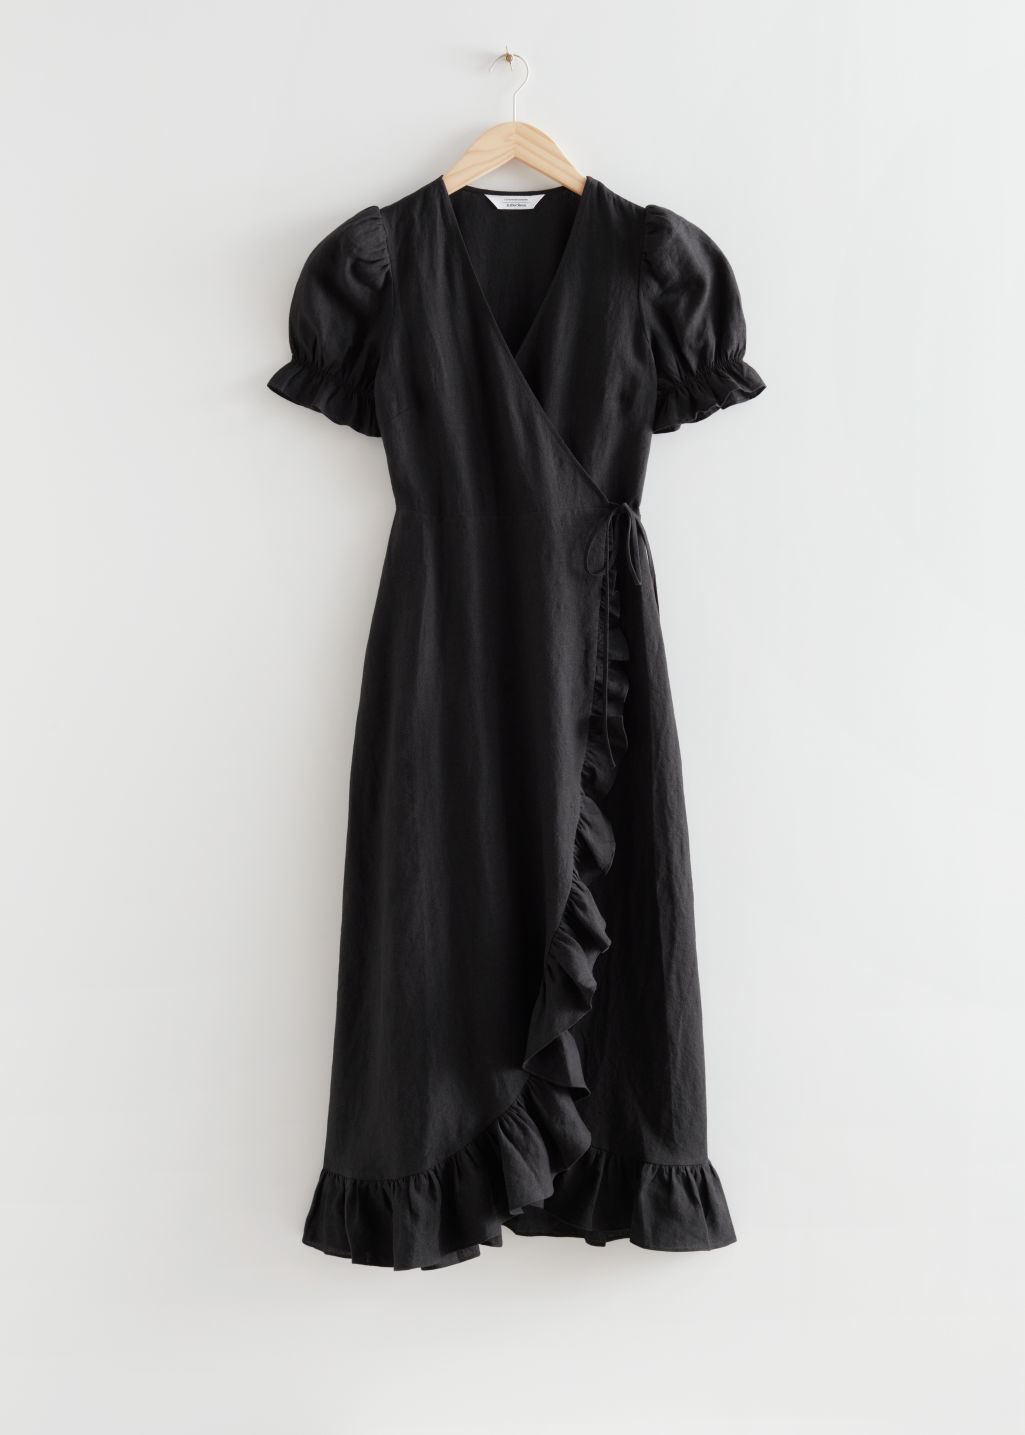 Vestido negro de & Other Stories (99 euros).